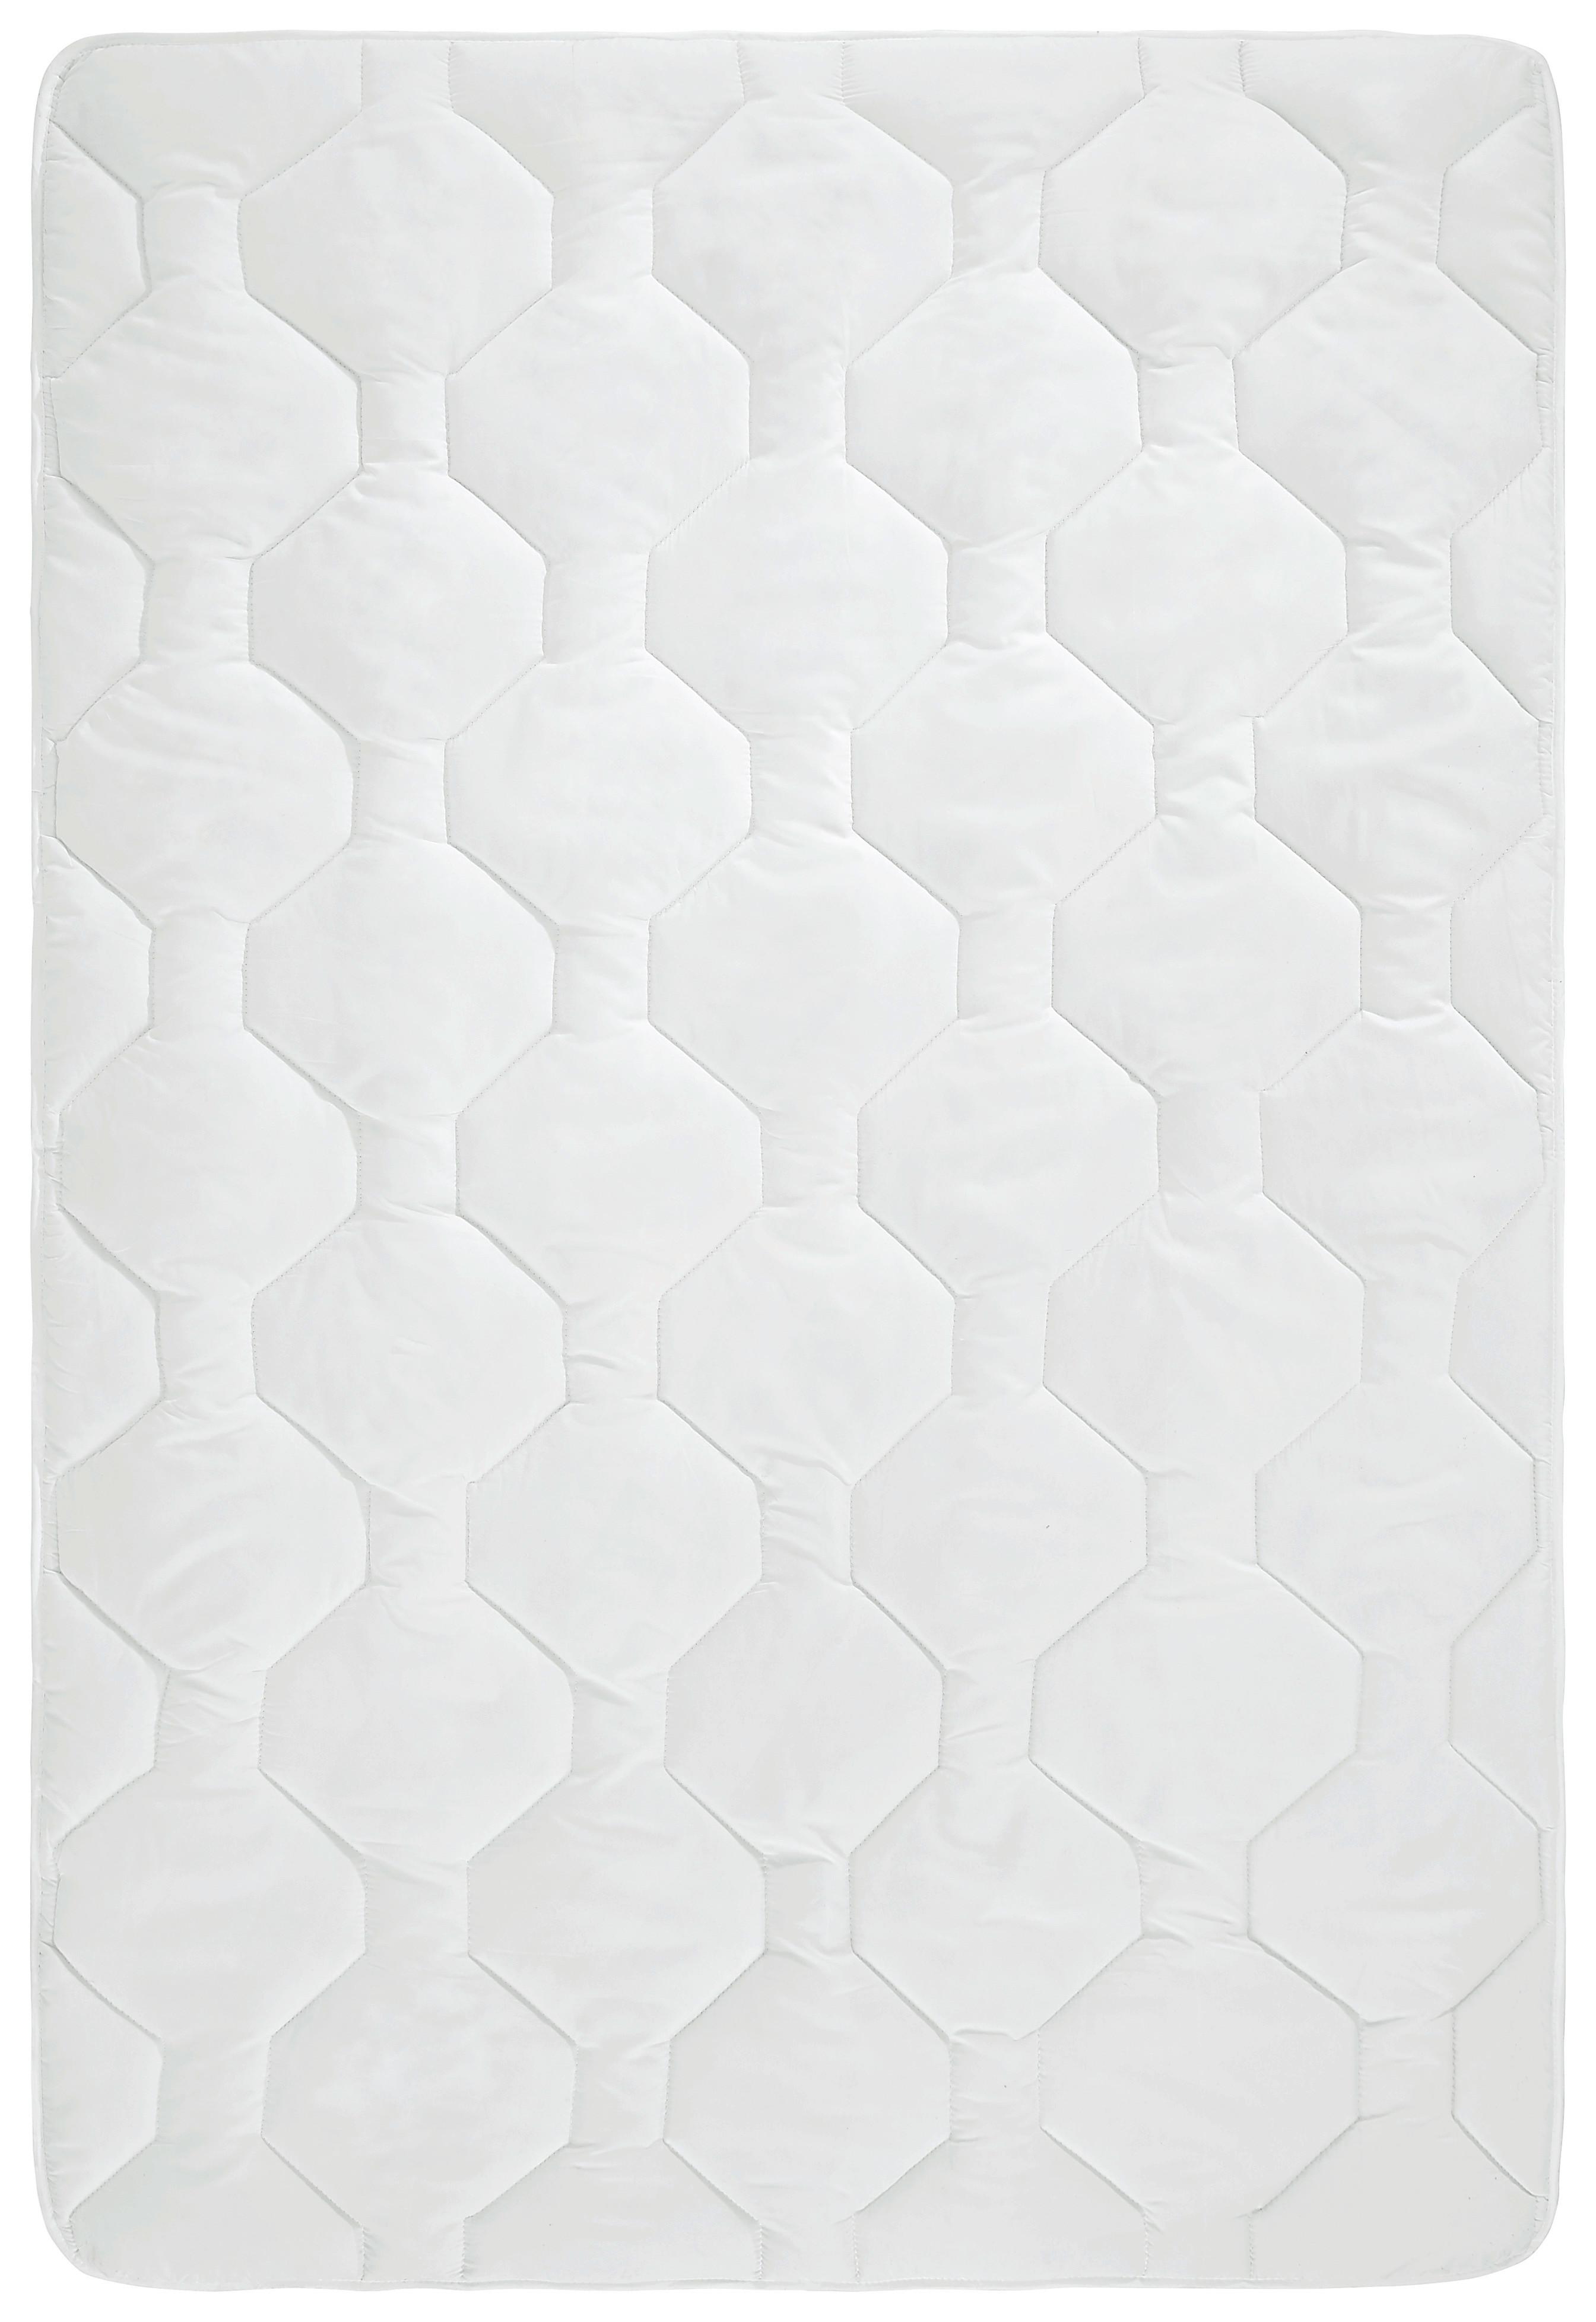 Celoročná Prikrývka Aloe Vera, 135-140/200cm - biela, Konvenčný, textil (135-140/200cm) - Nadana